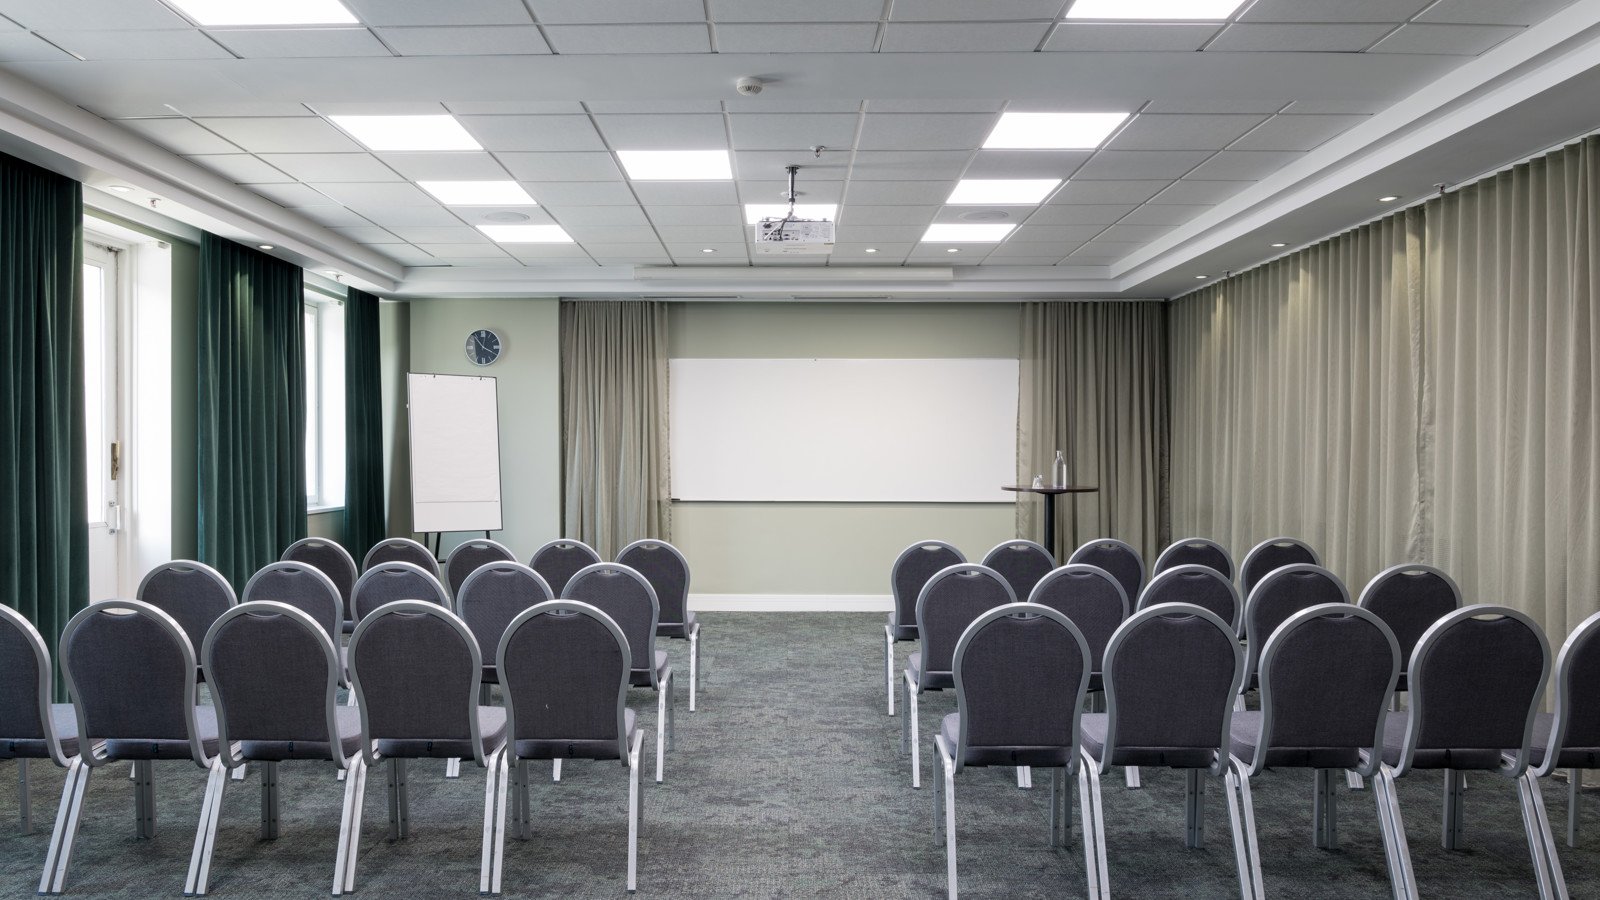 Fint konferensrum med stolar i rader, gardiner och whiteboard